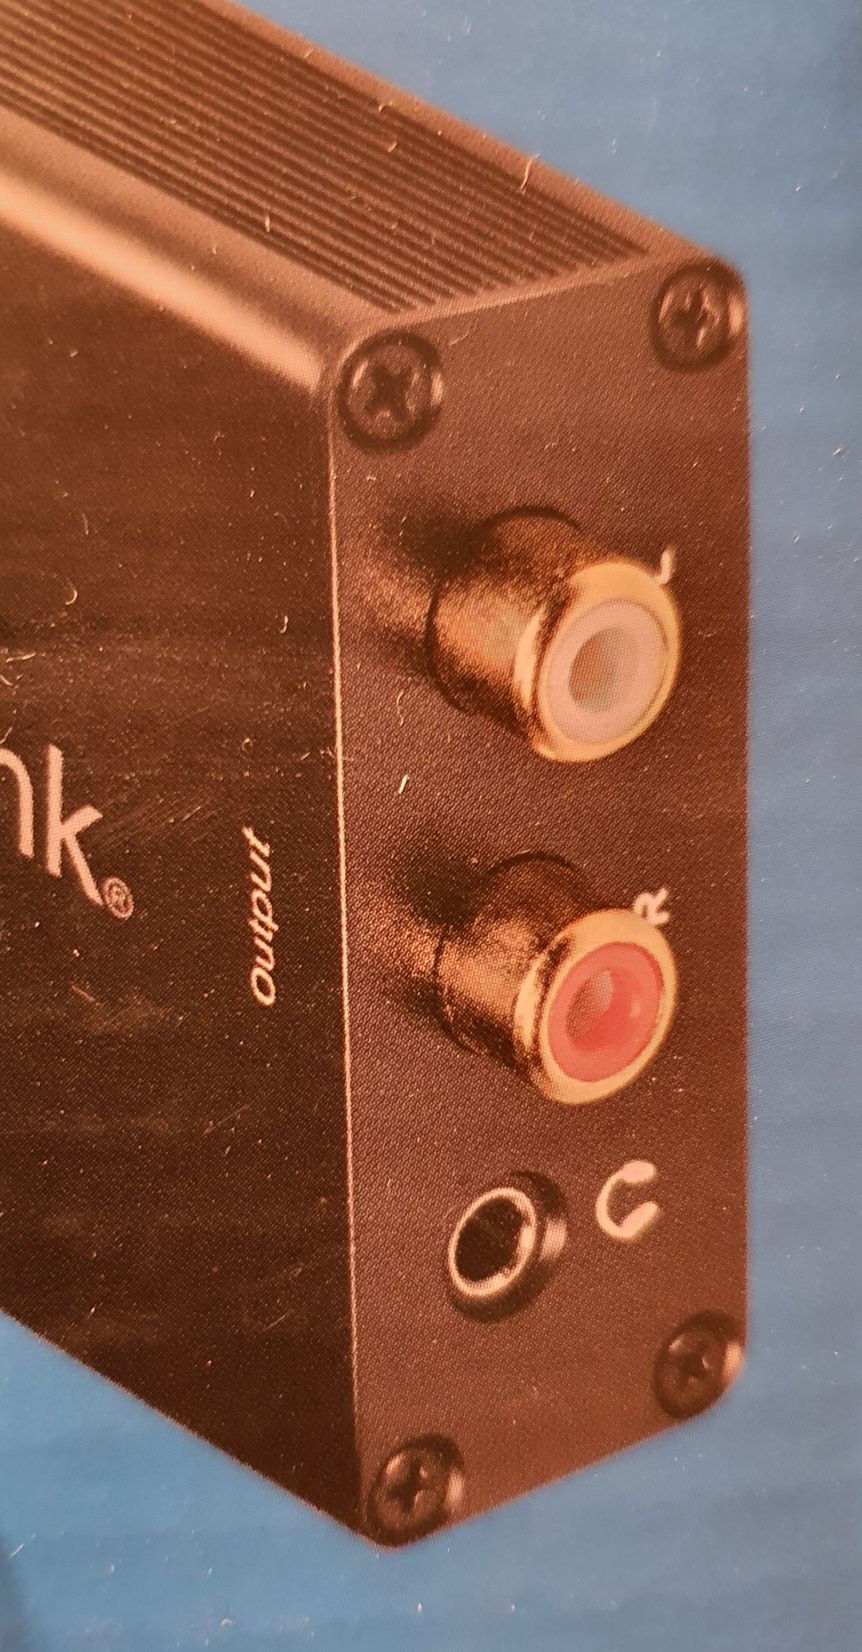 Convertor audio optic la RCA/jack 3.5 mm